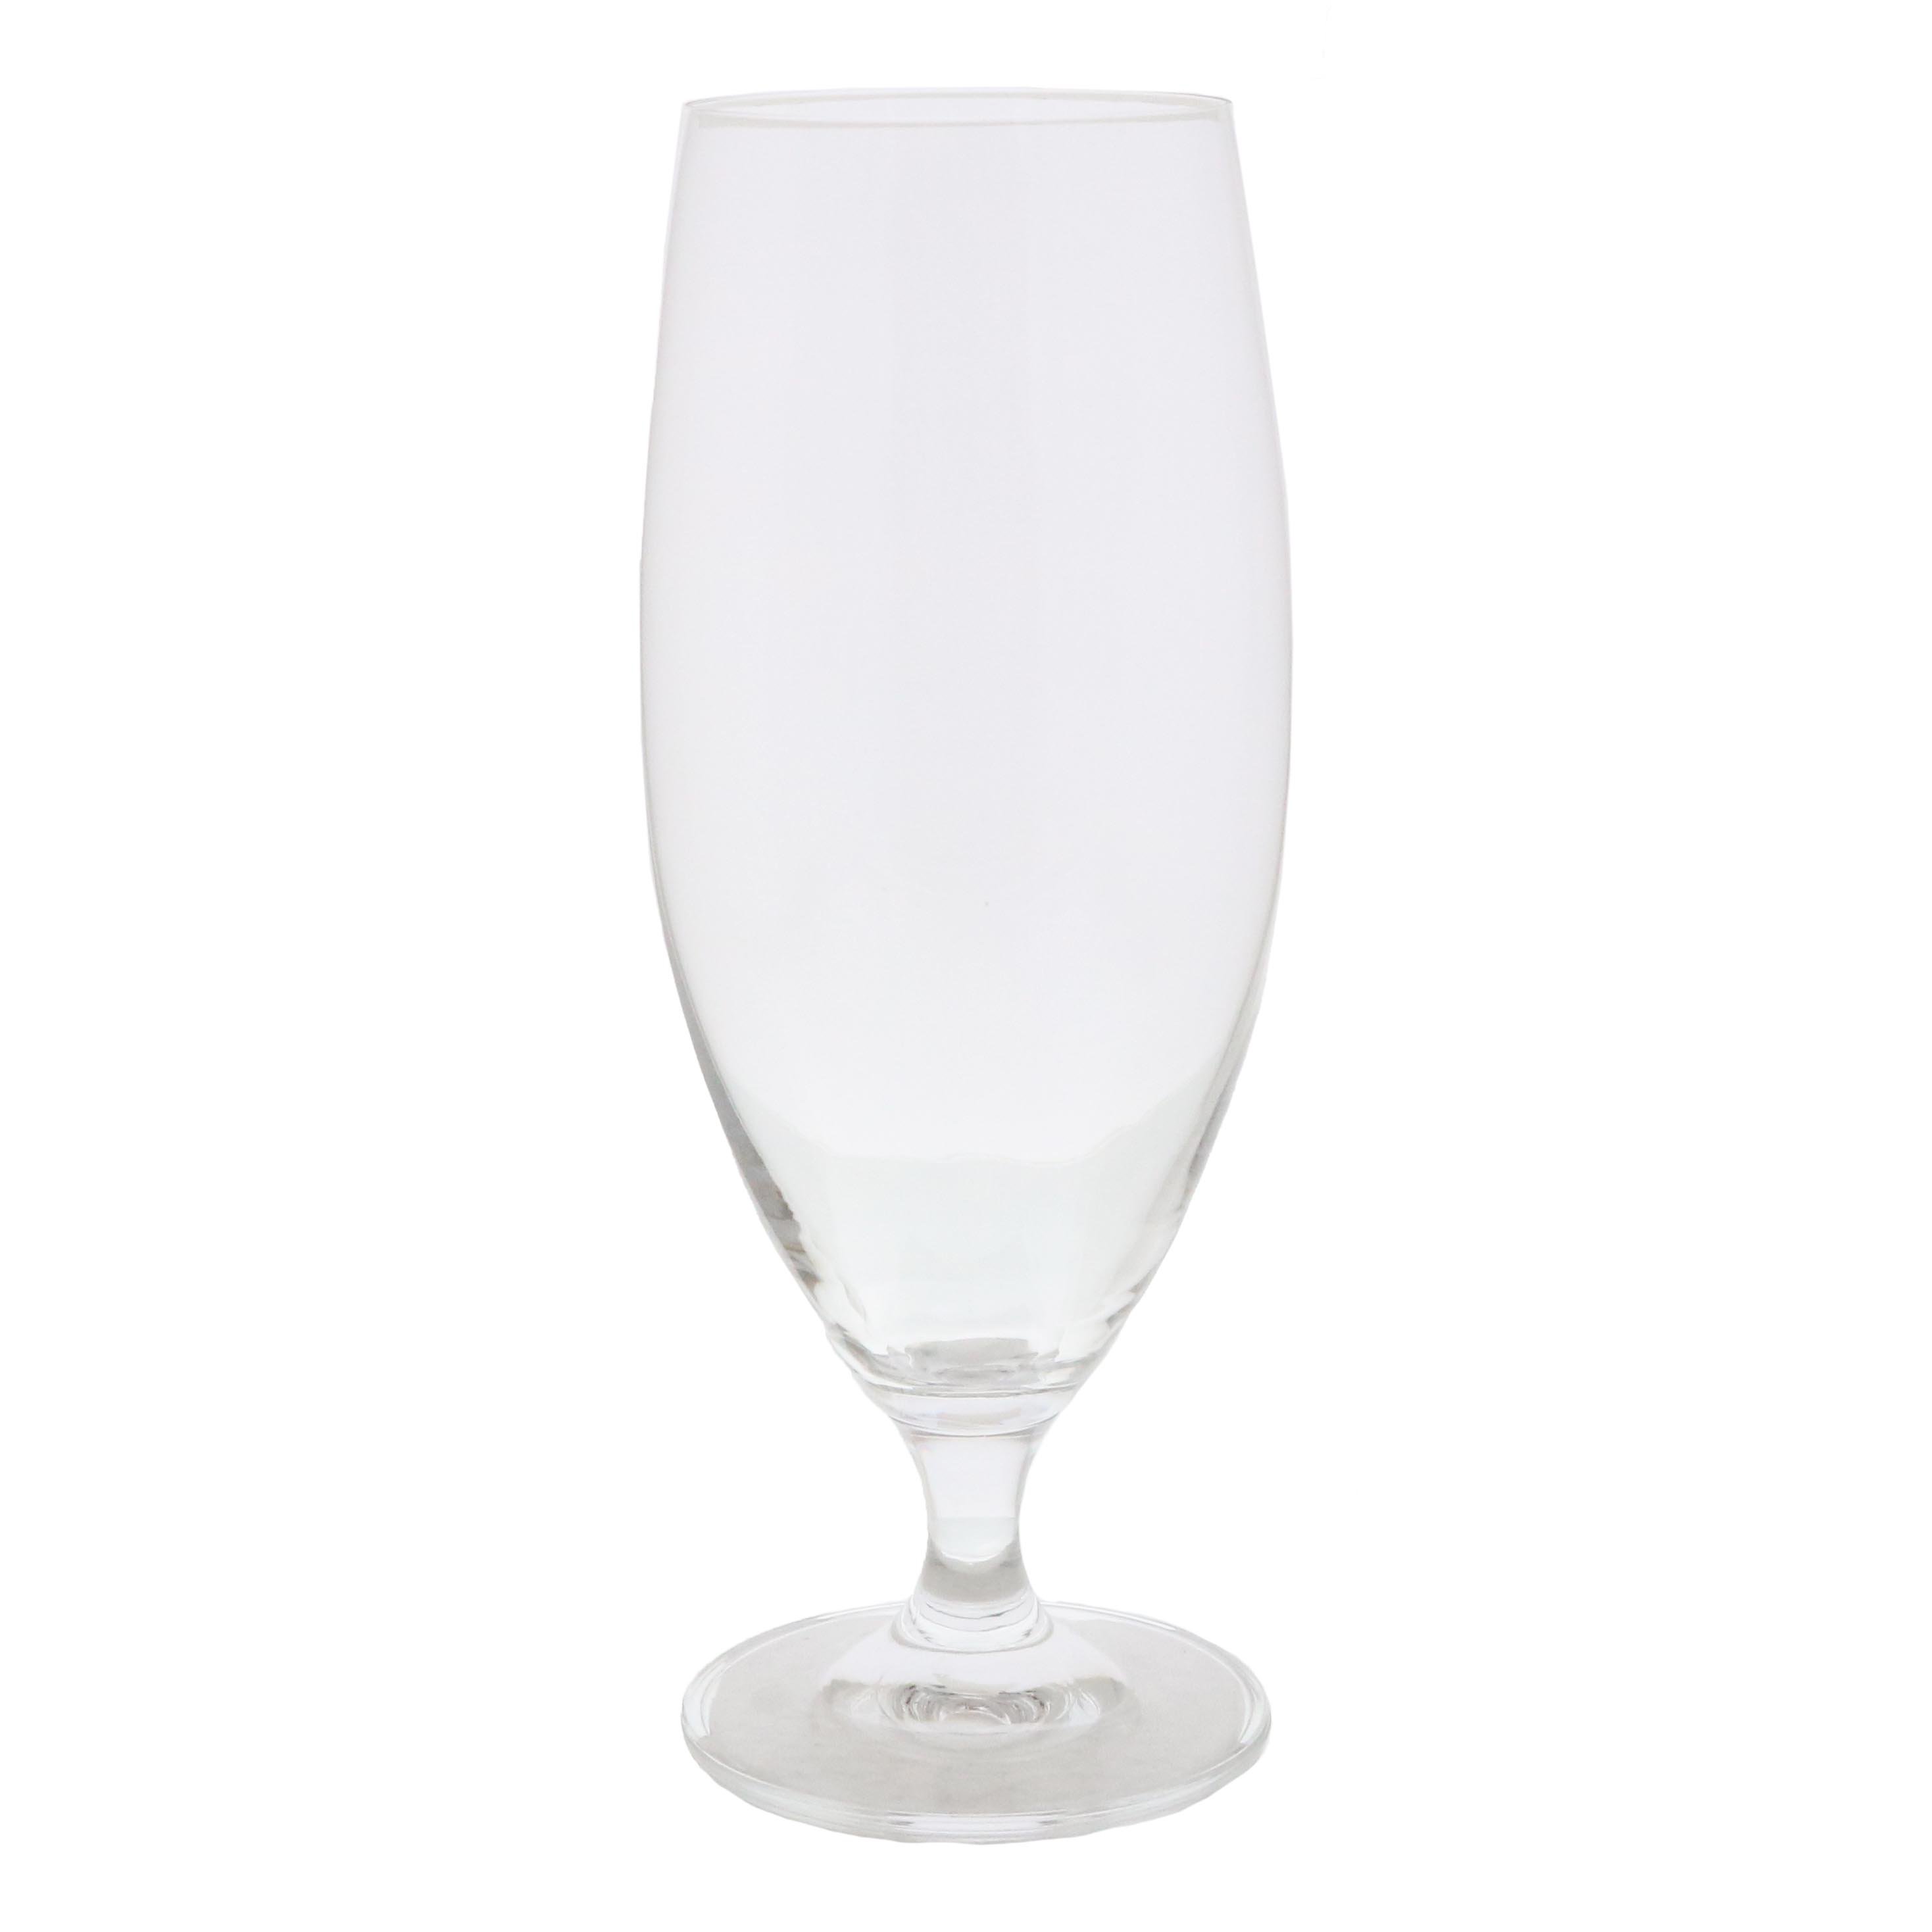 Bohemia Crystal Bar Cocktail / Mocktail / Beer Glasses Set, Transparent,  360ml, Set of 4